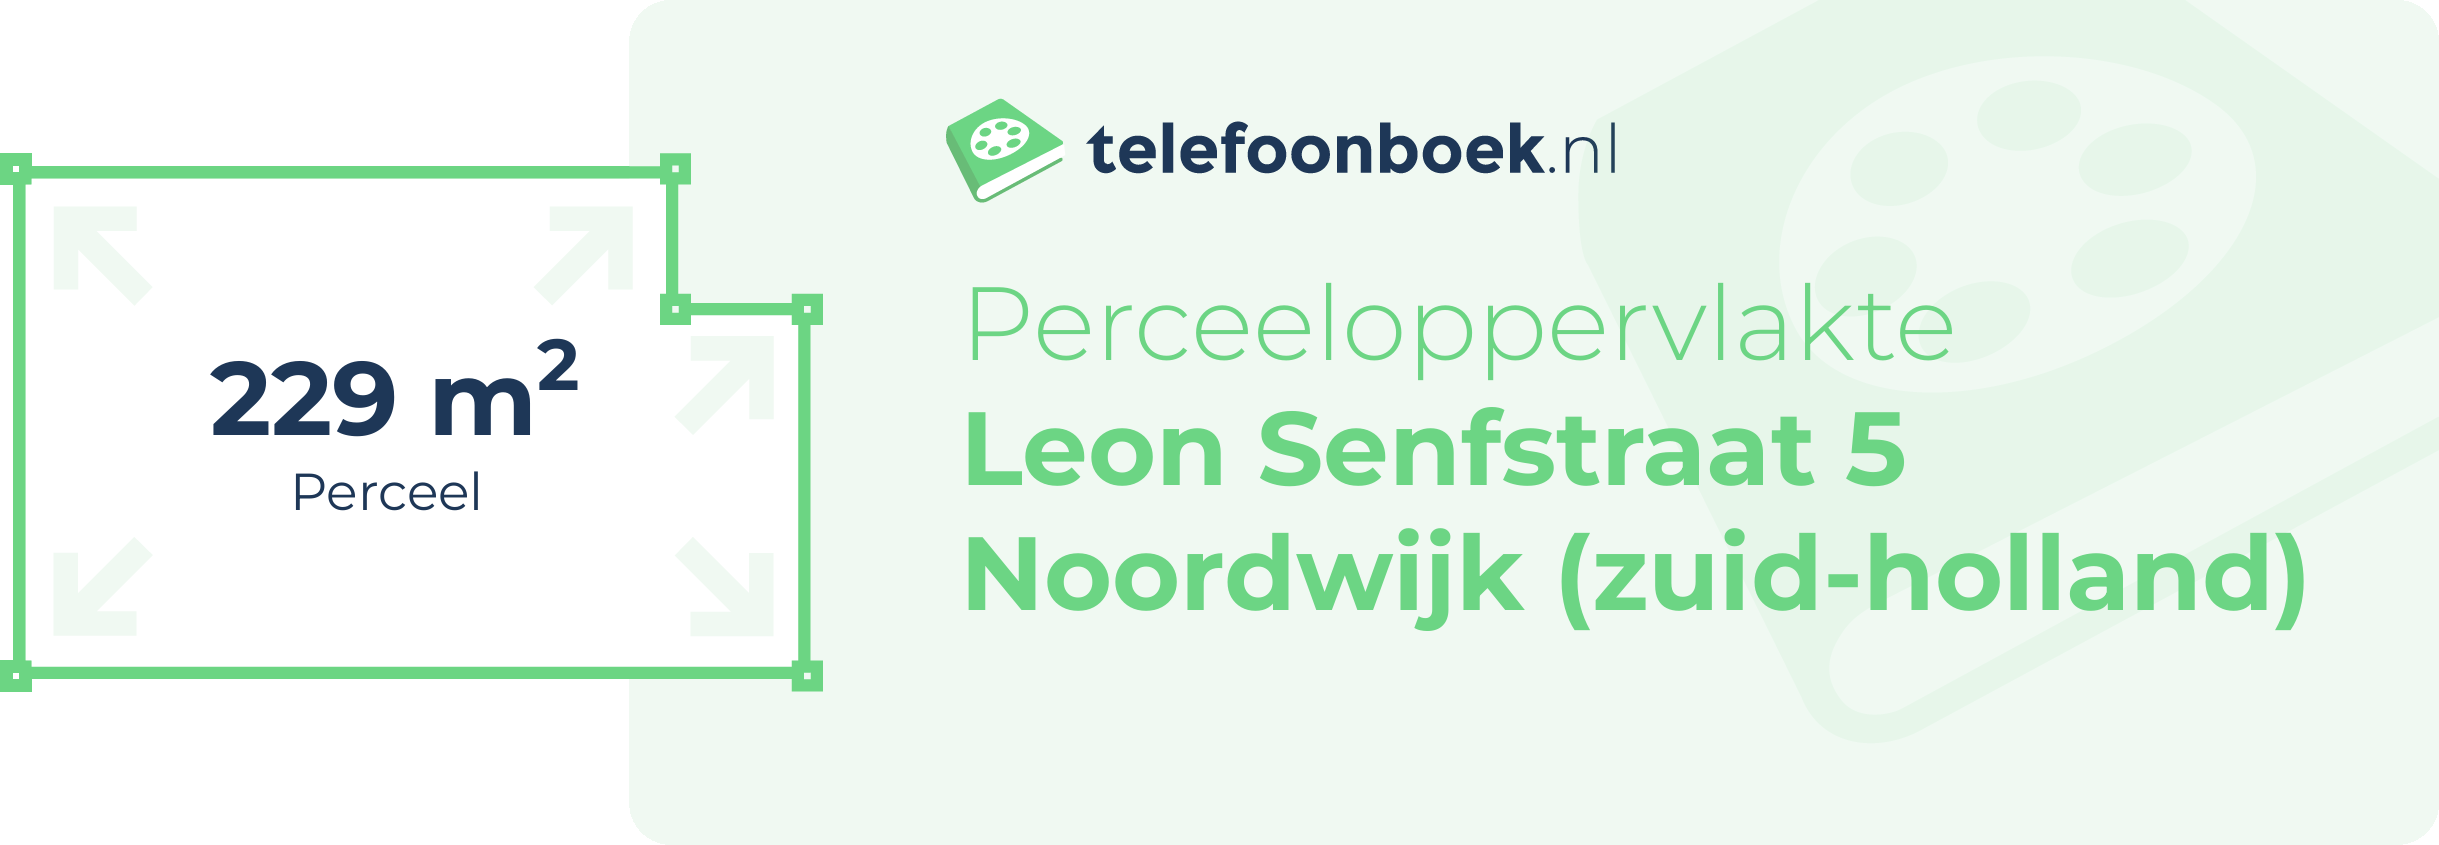 Perceeloppervlakte Leon Senfstraat 5 Noordwijk (Zuid-Holland)